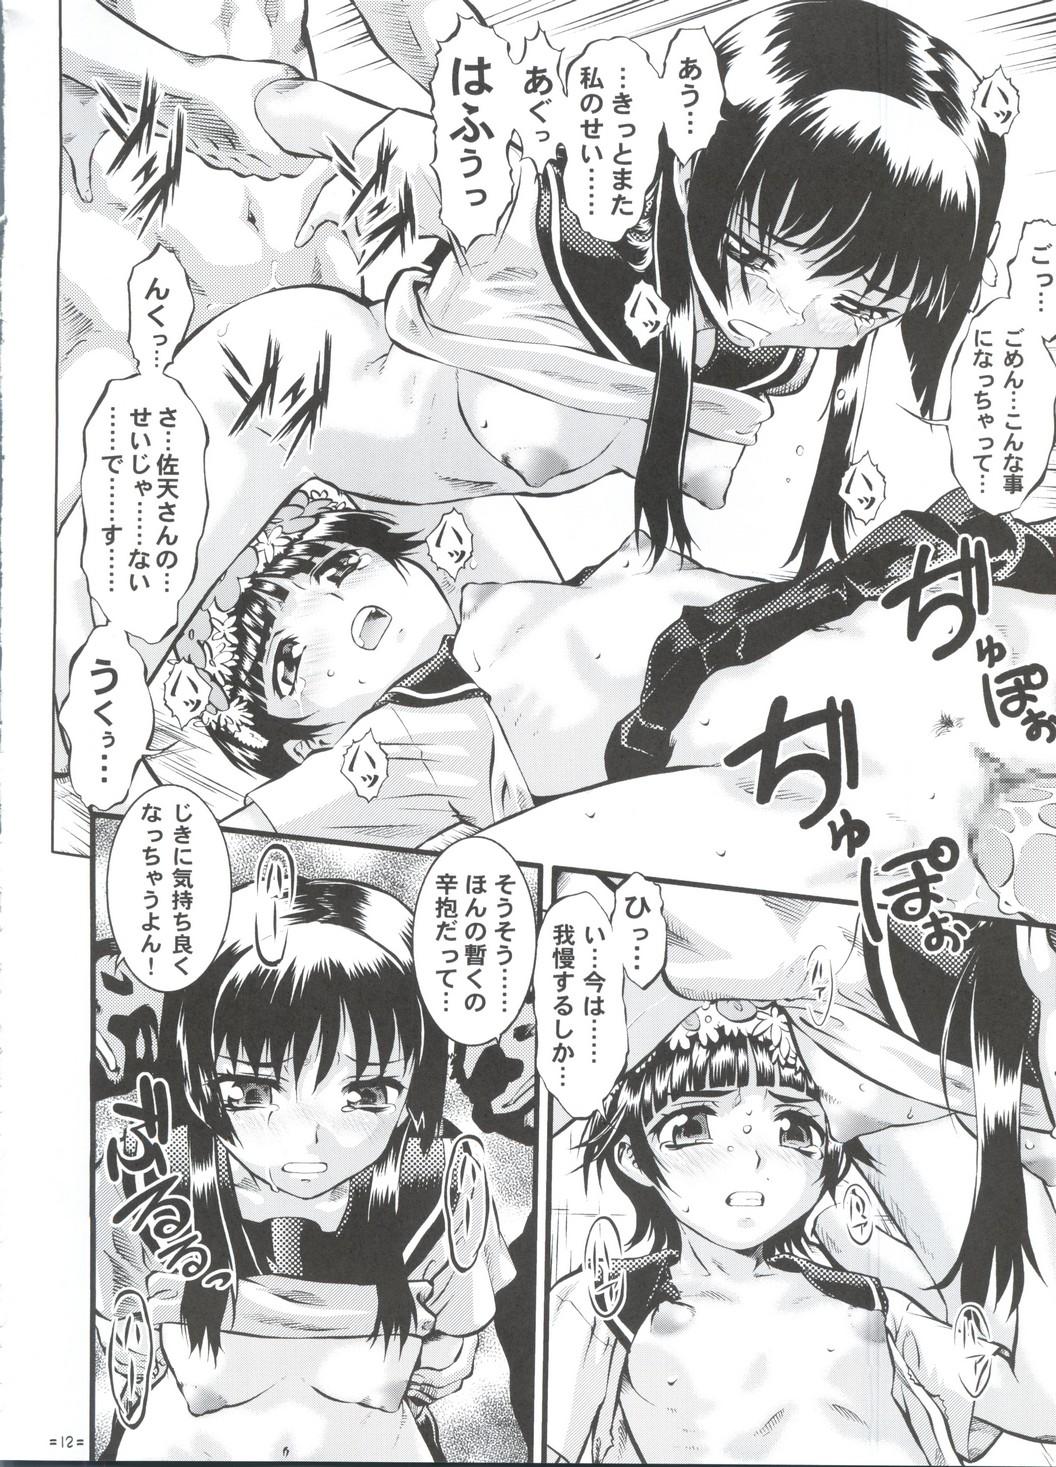 Bound W Poron TO-R - Toaru kagaku no railgun Koihime musou Abuse - Page 11